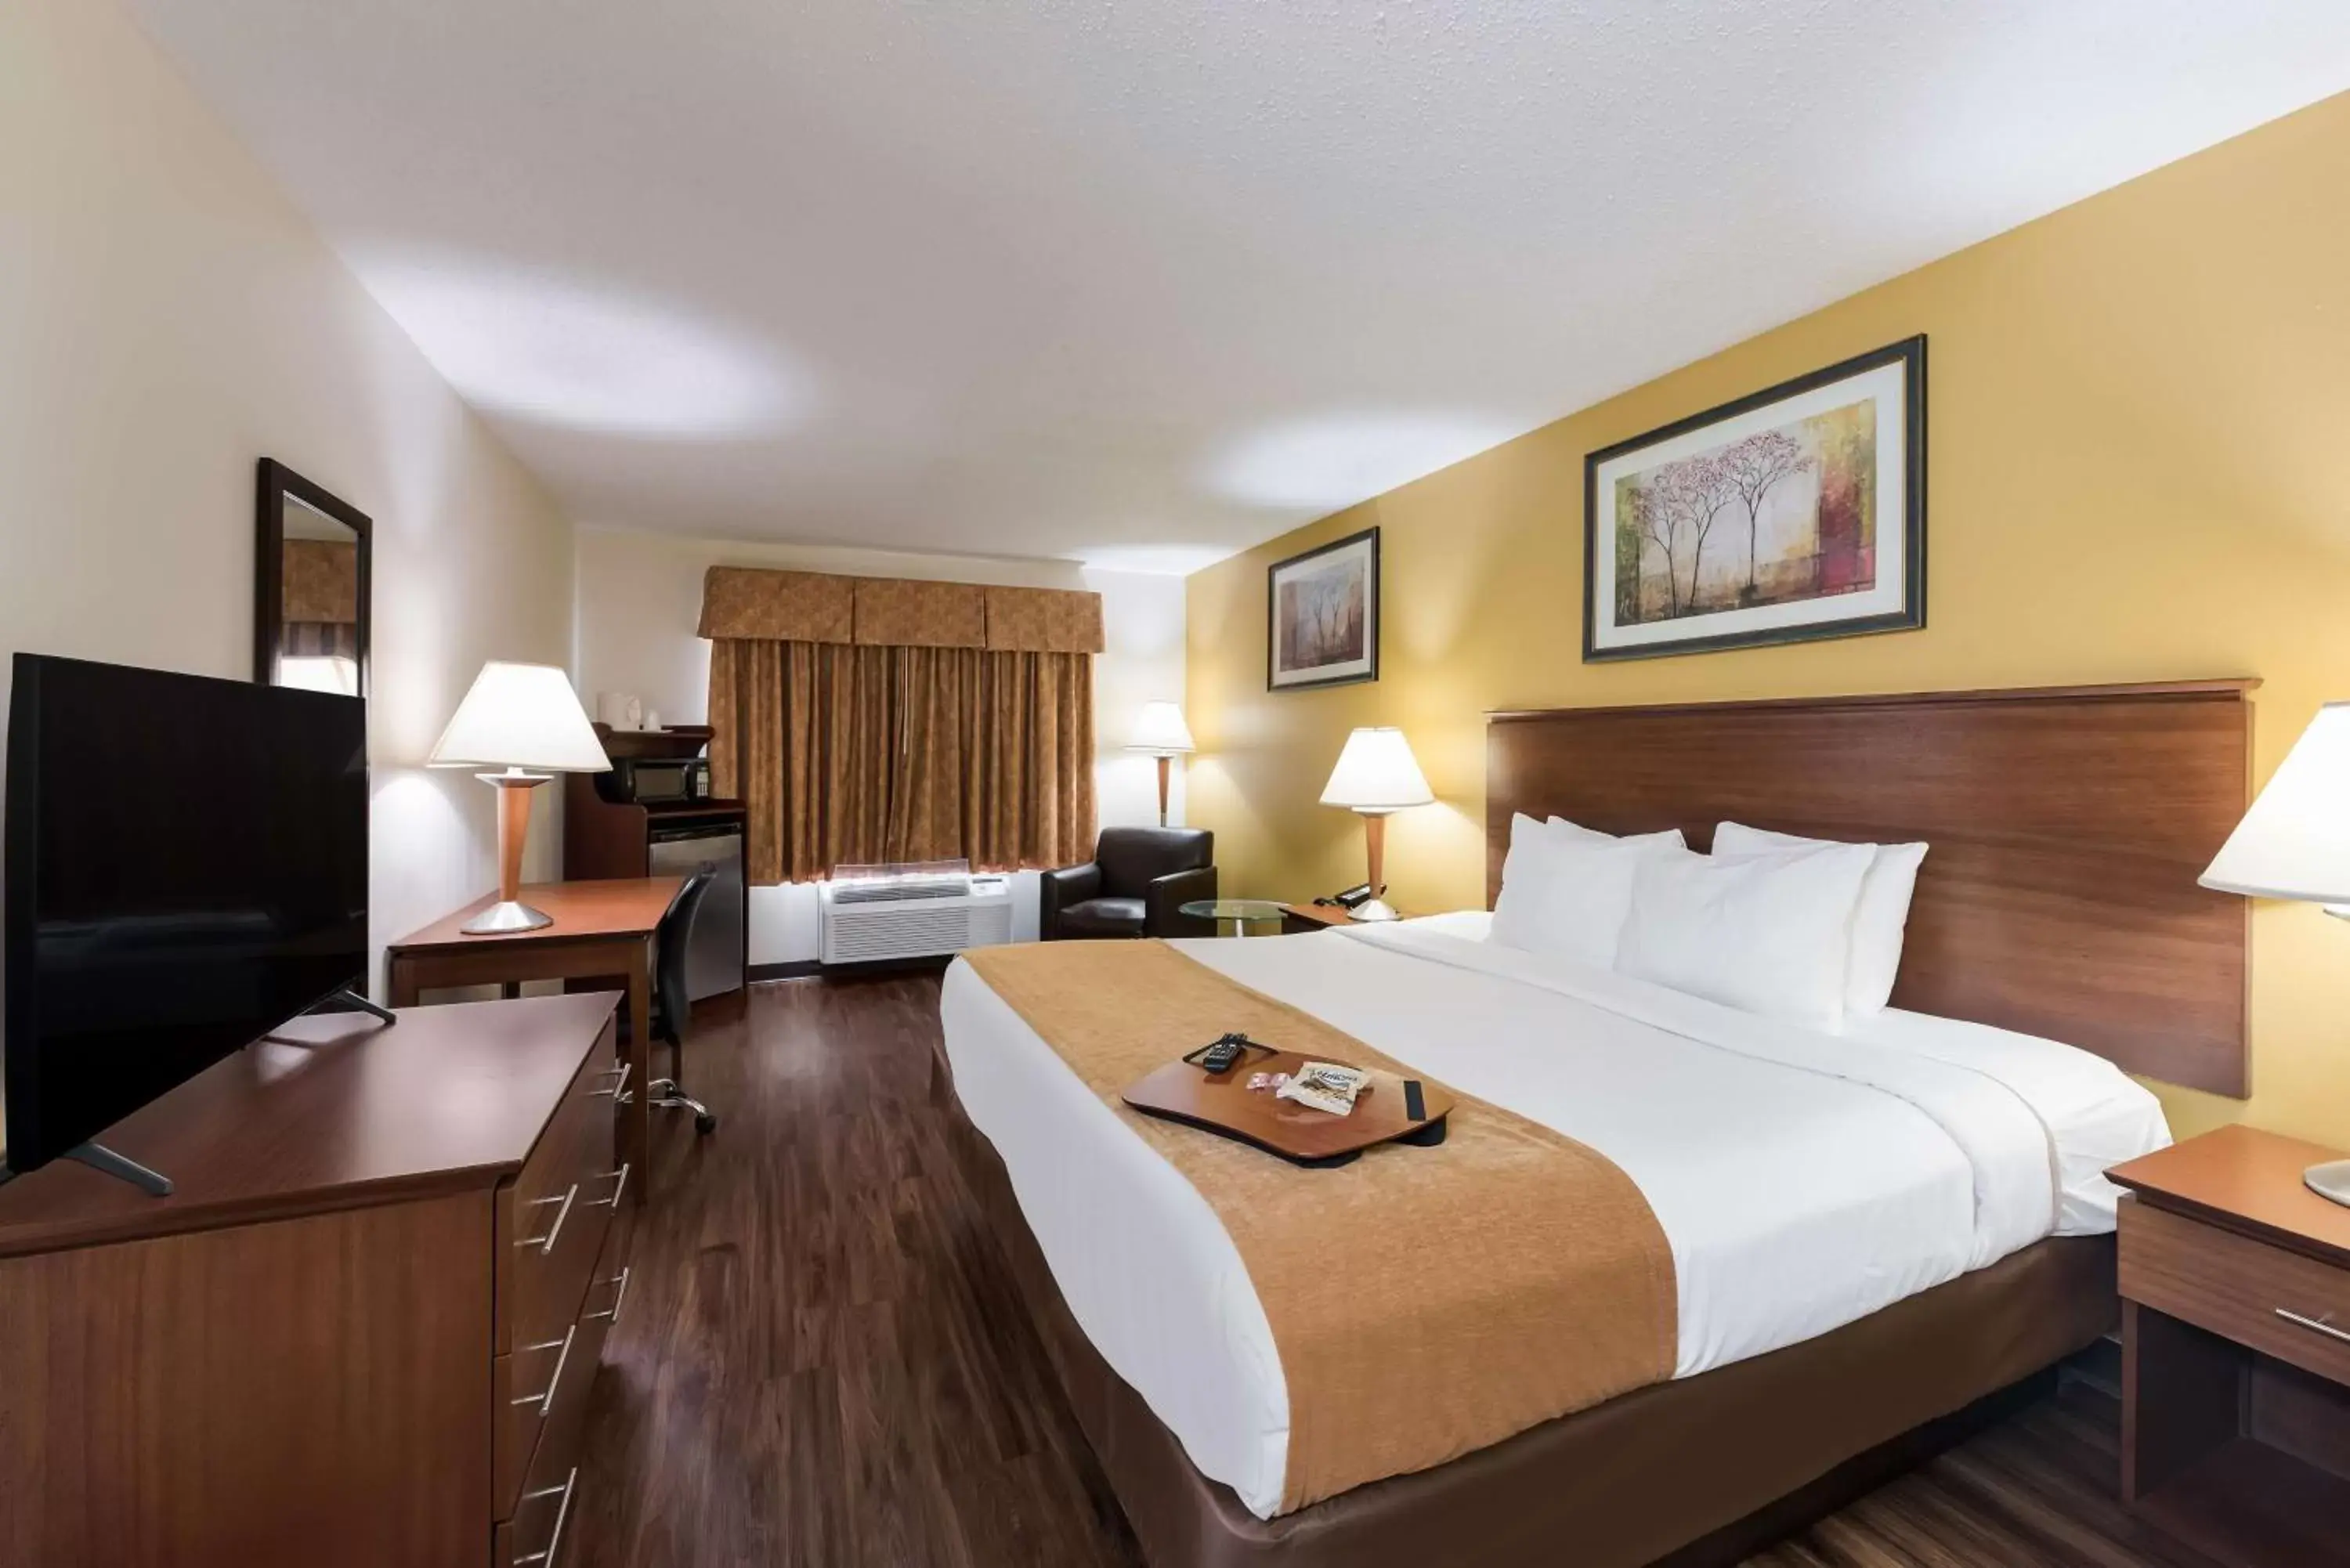 Bedroom, Bed in Best Western Lakewood Inn